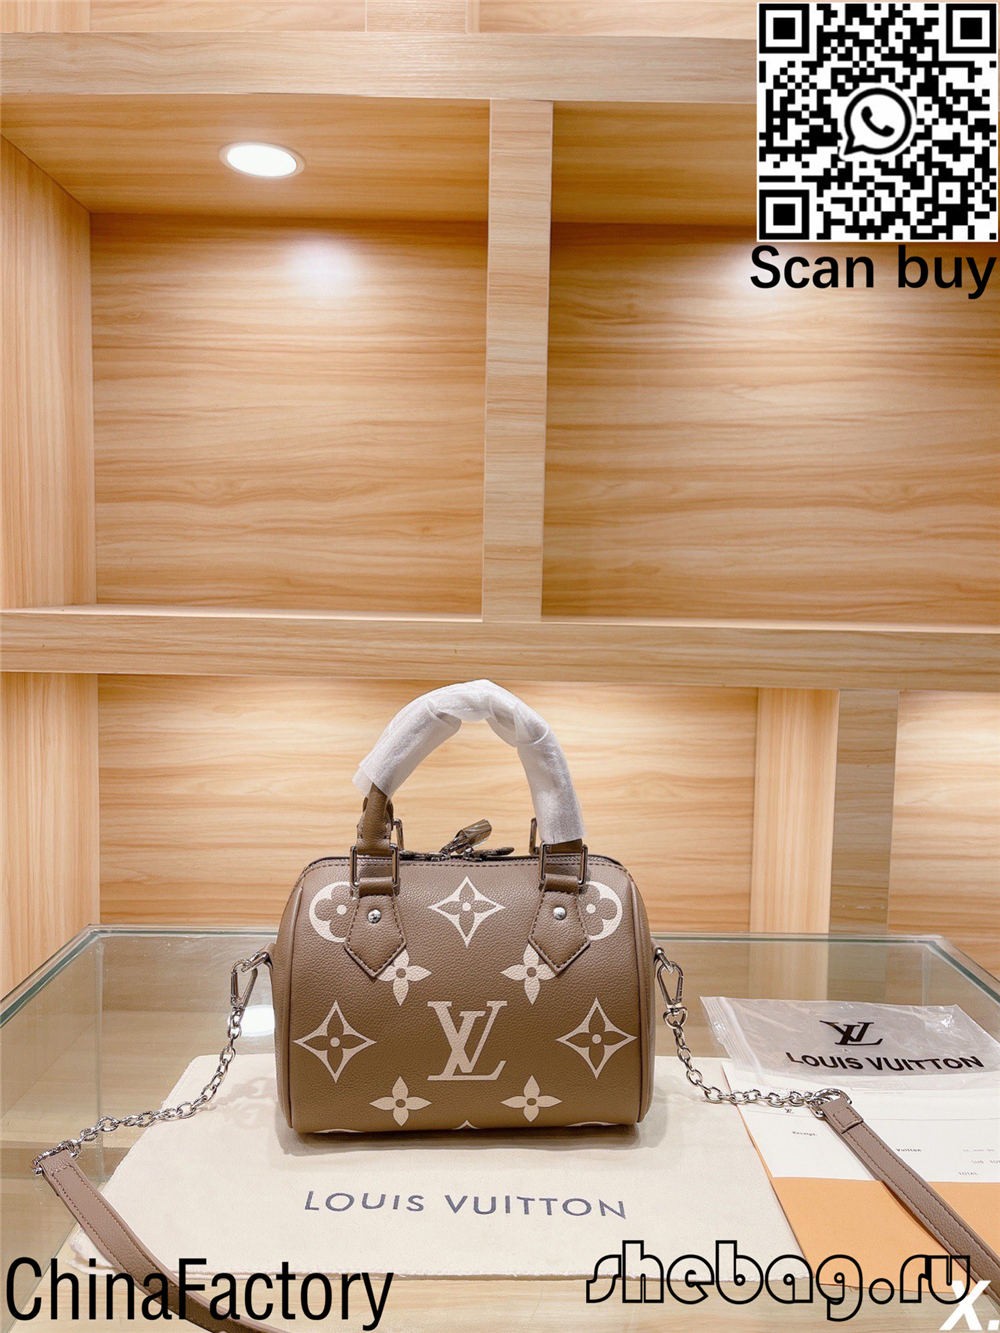 Яку з них я маю купити для першої копії дизайнерської сумки в моєму житті? (Видання 2022 р.) - Інтернет-магазин підробленої сумки Louis Vuitton найкращої якості, копія дизайнерської сумки ru